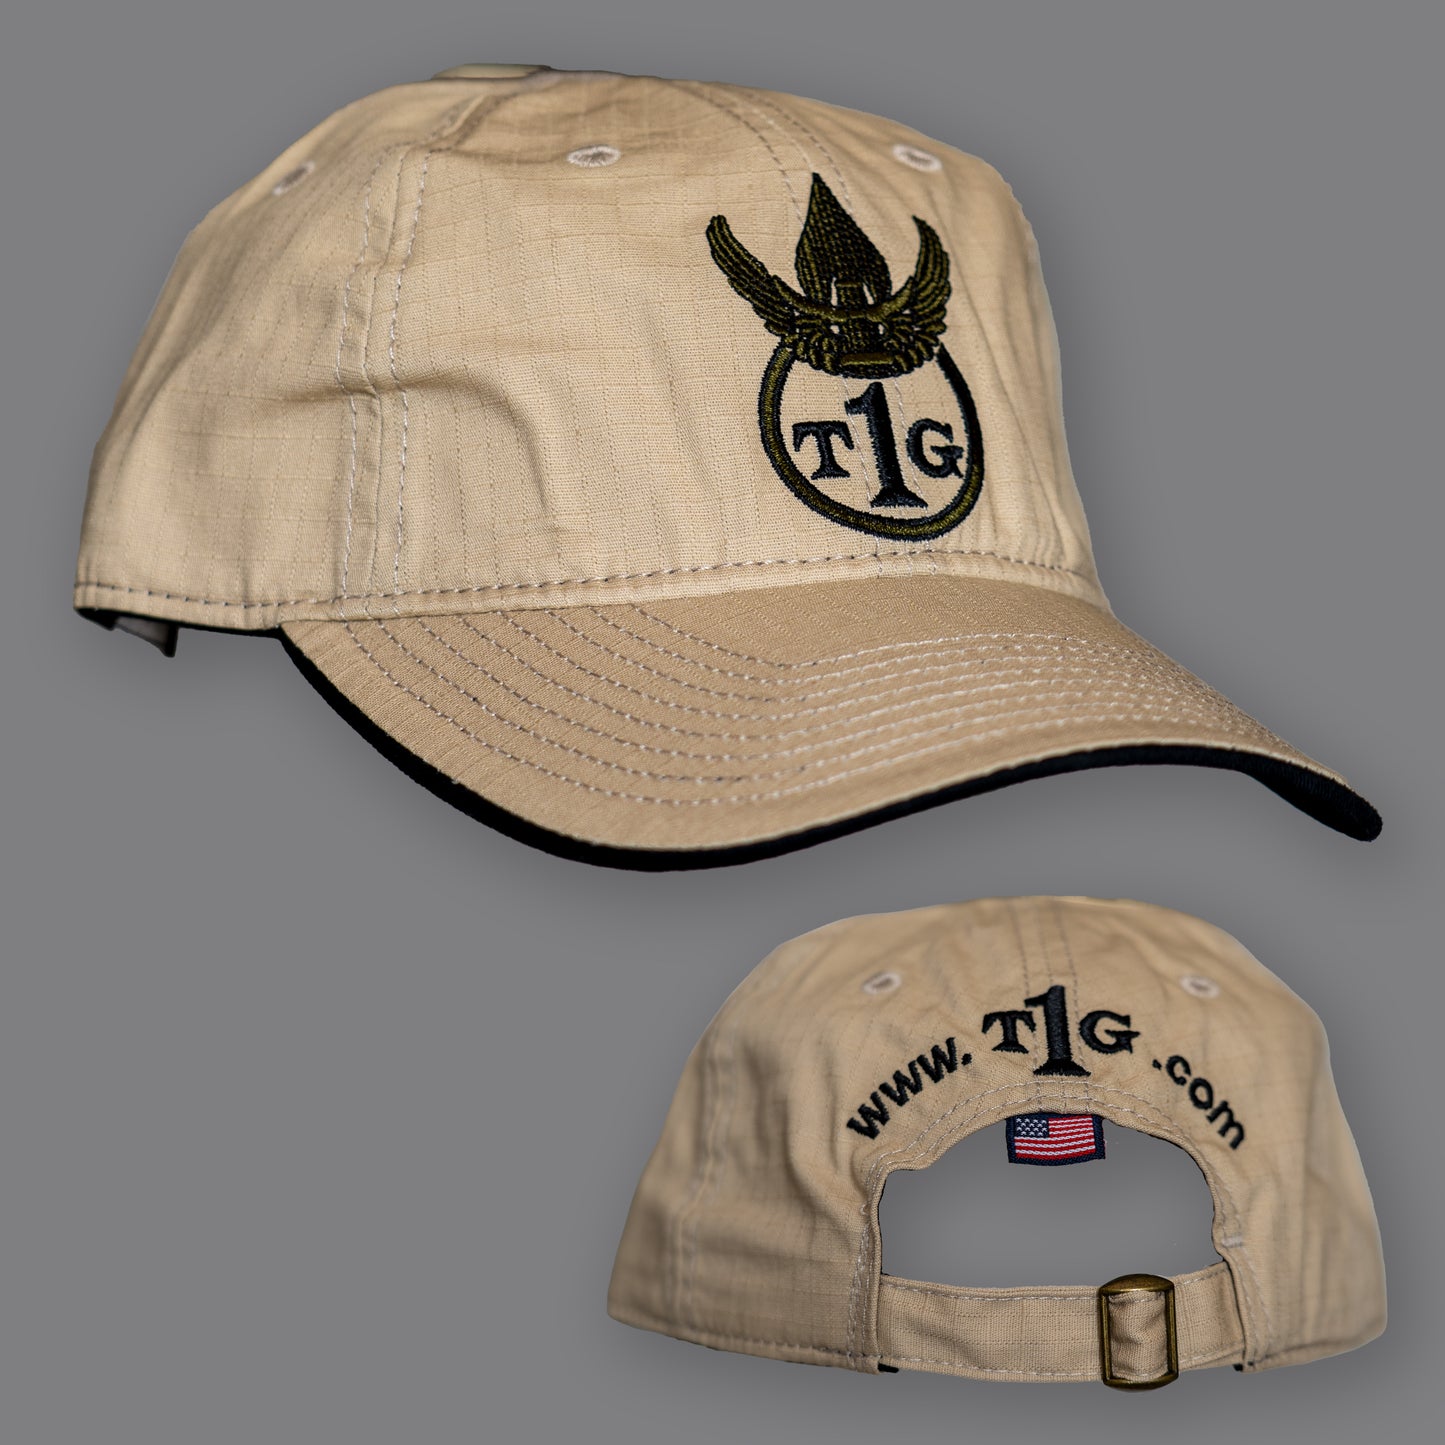 T1G Hats